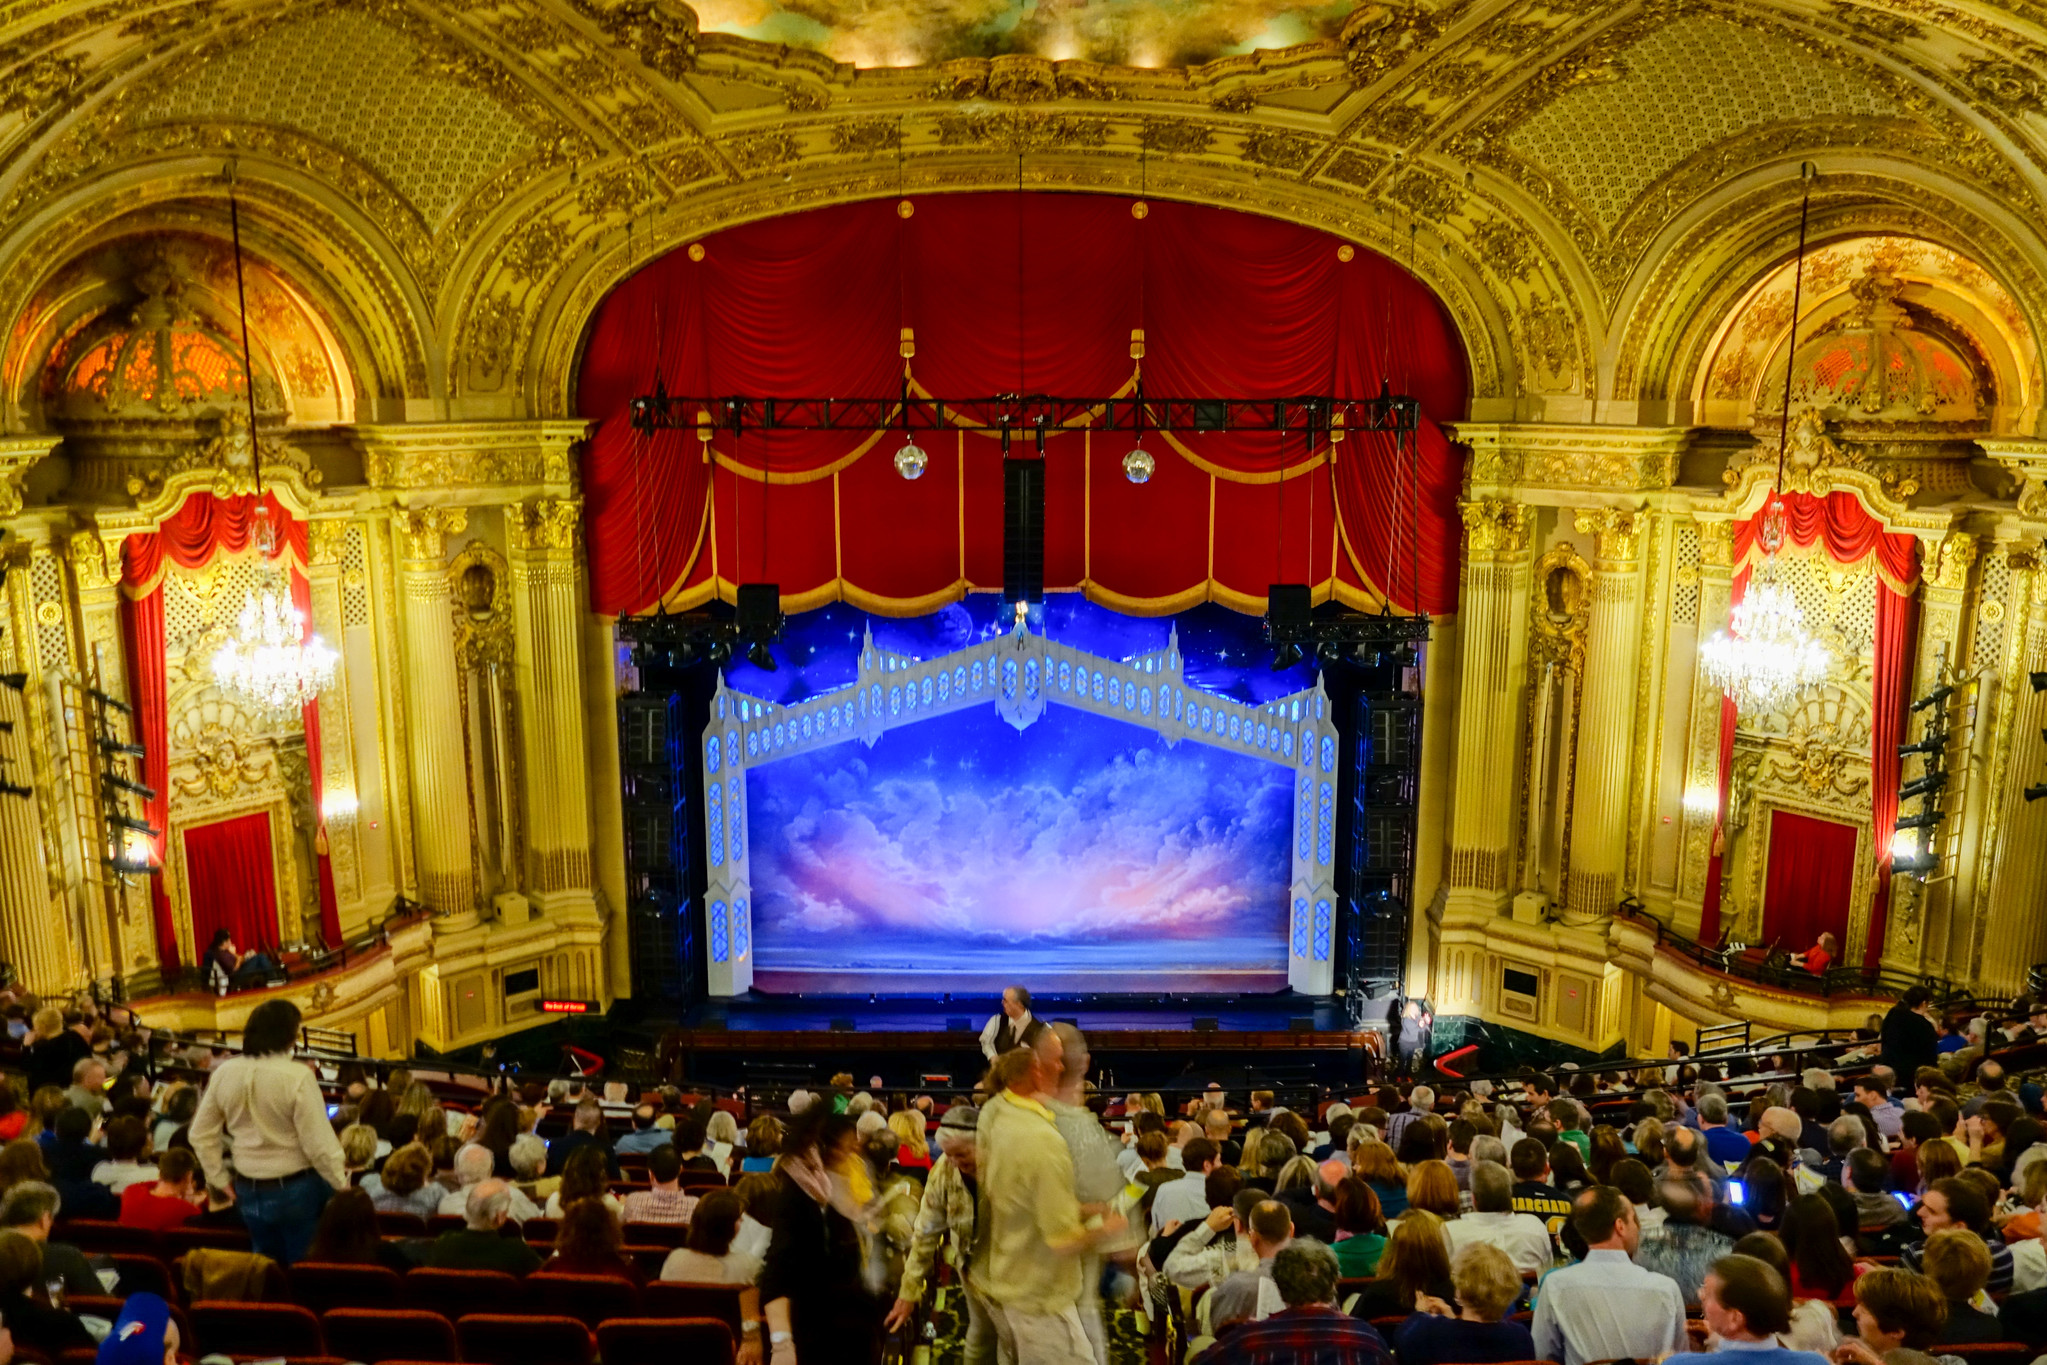 Boston theatre